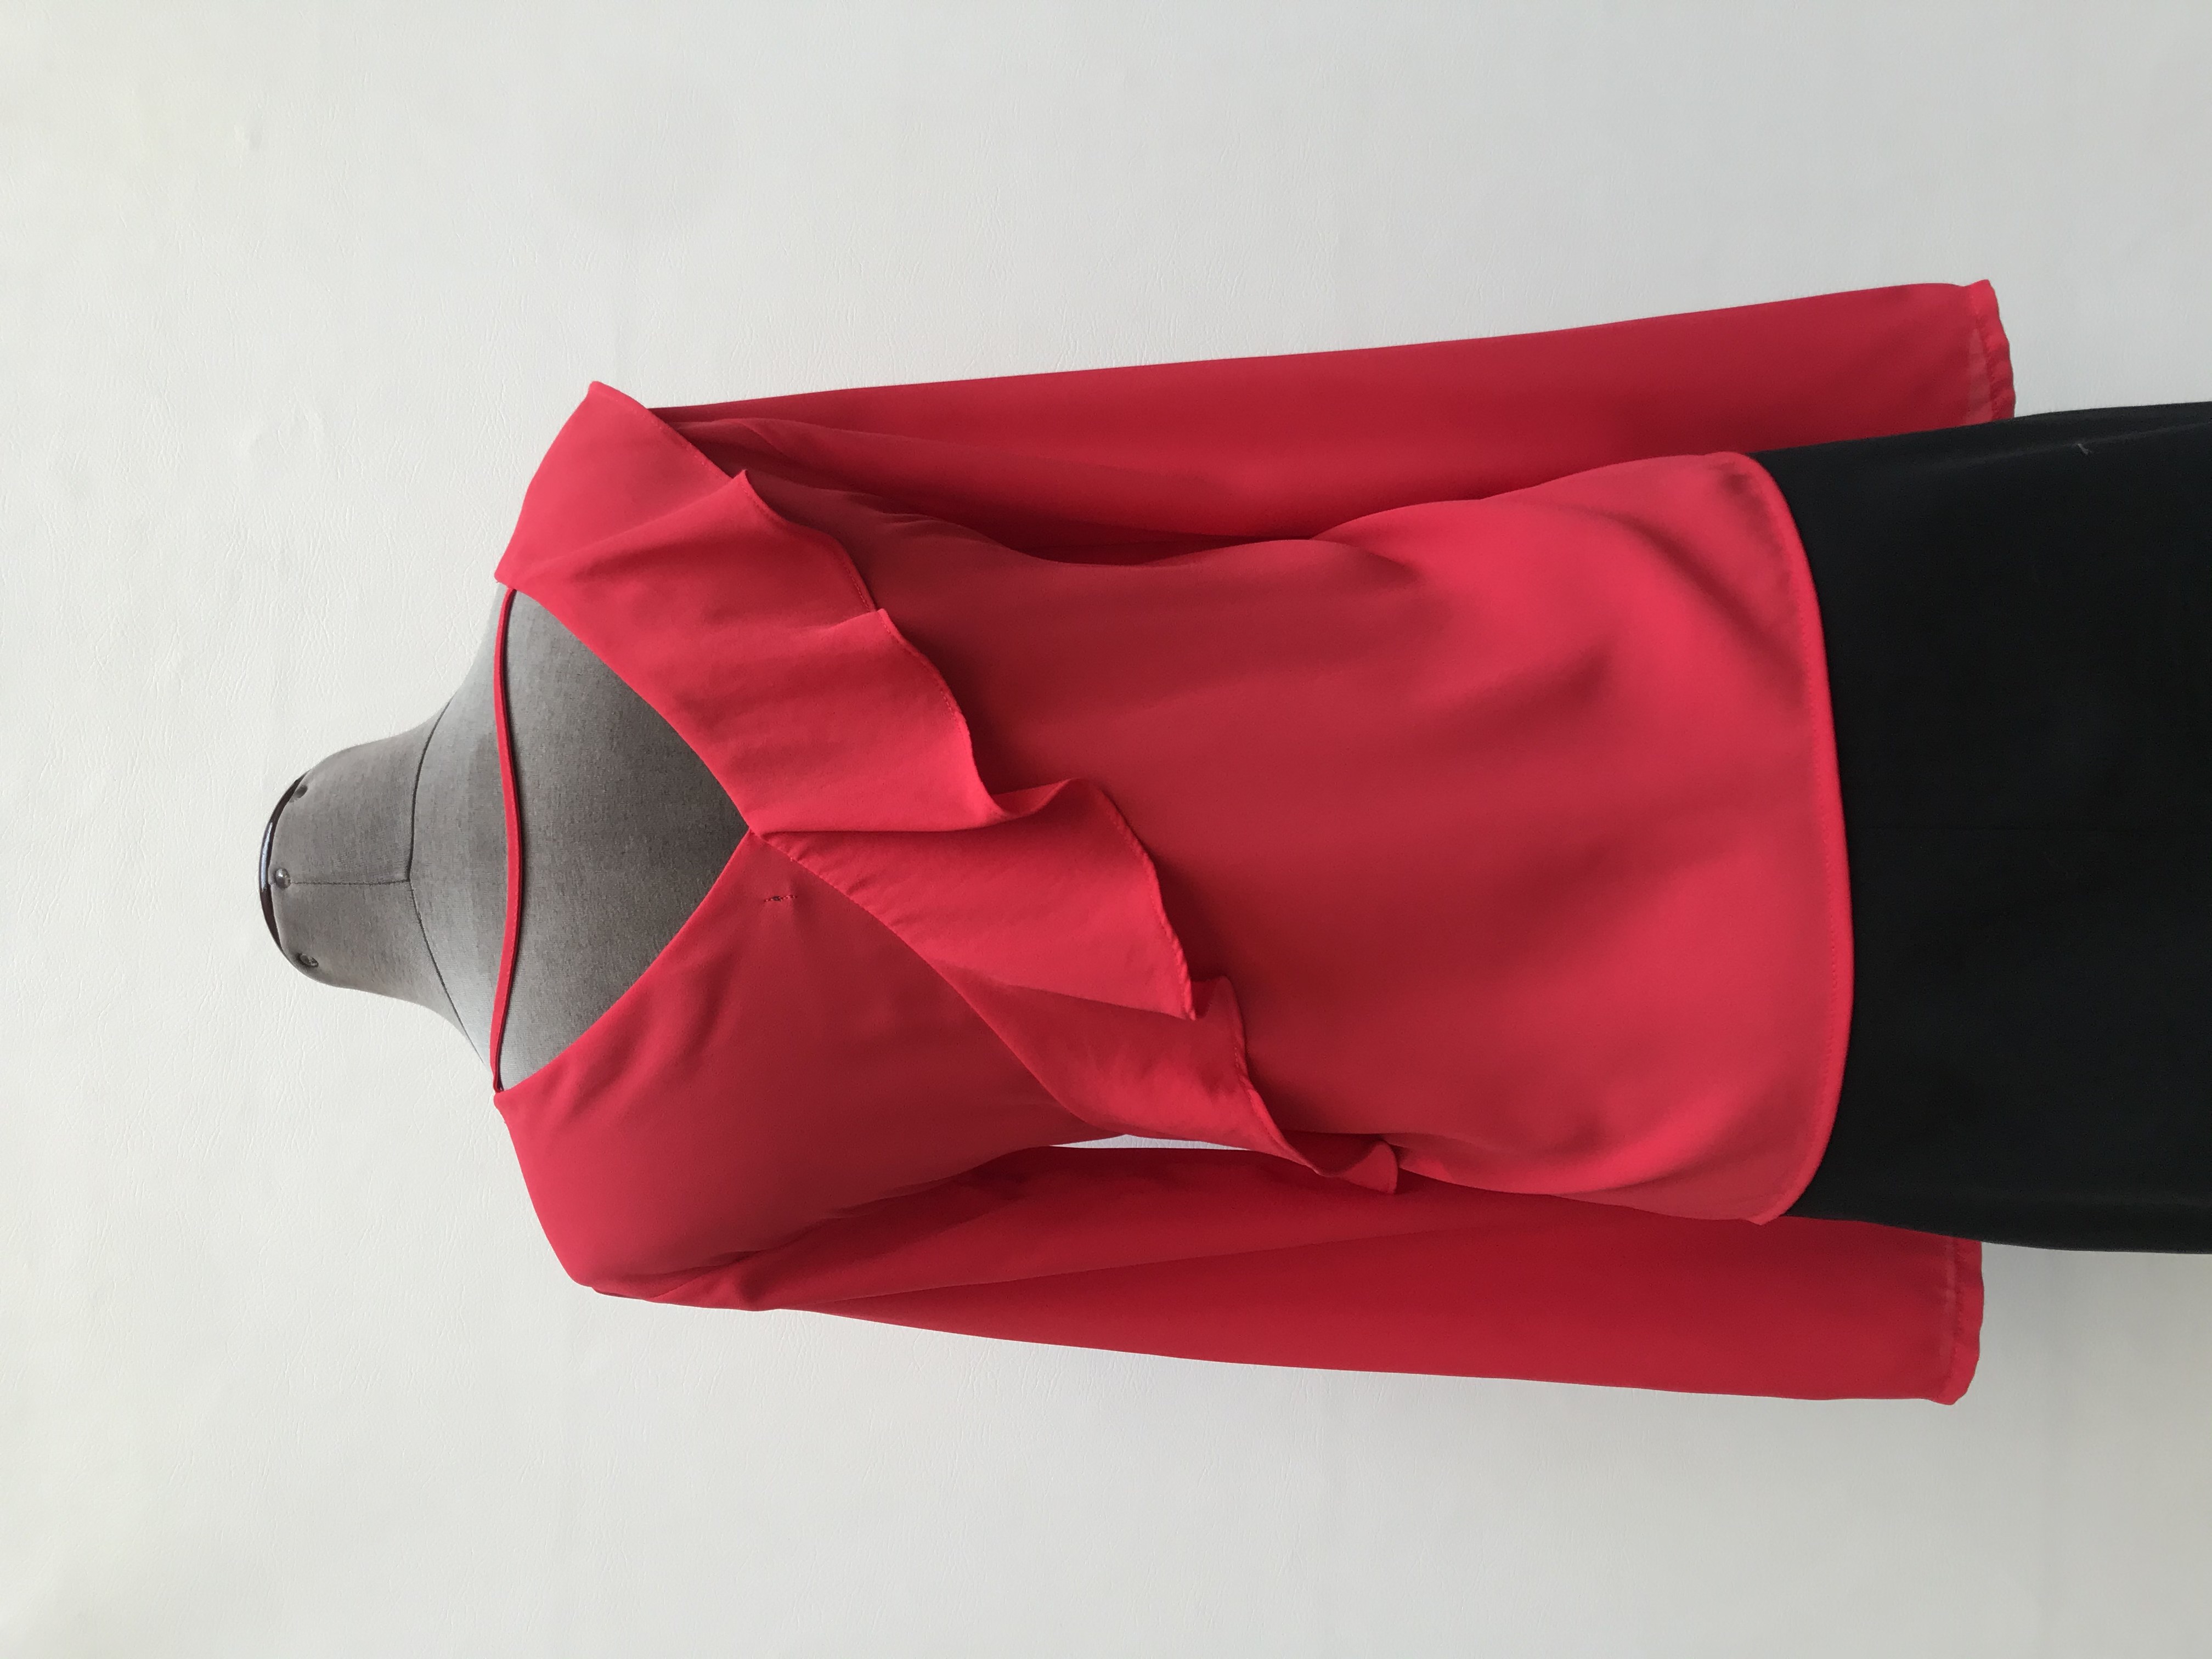 Blusa Malabar roja tela tipo crepe, manga larga, escote cruzado con volantes y escote en la espalda. Precio original S/ 100
Talla S